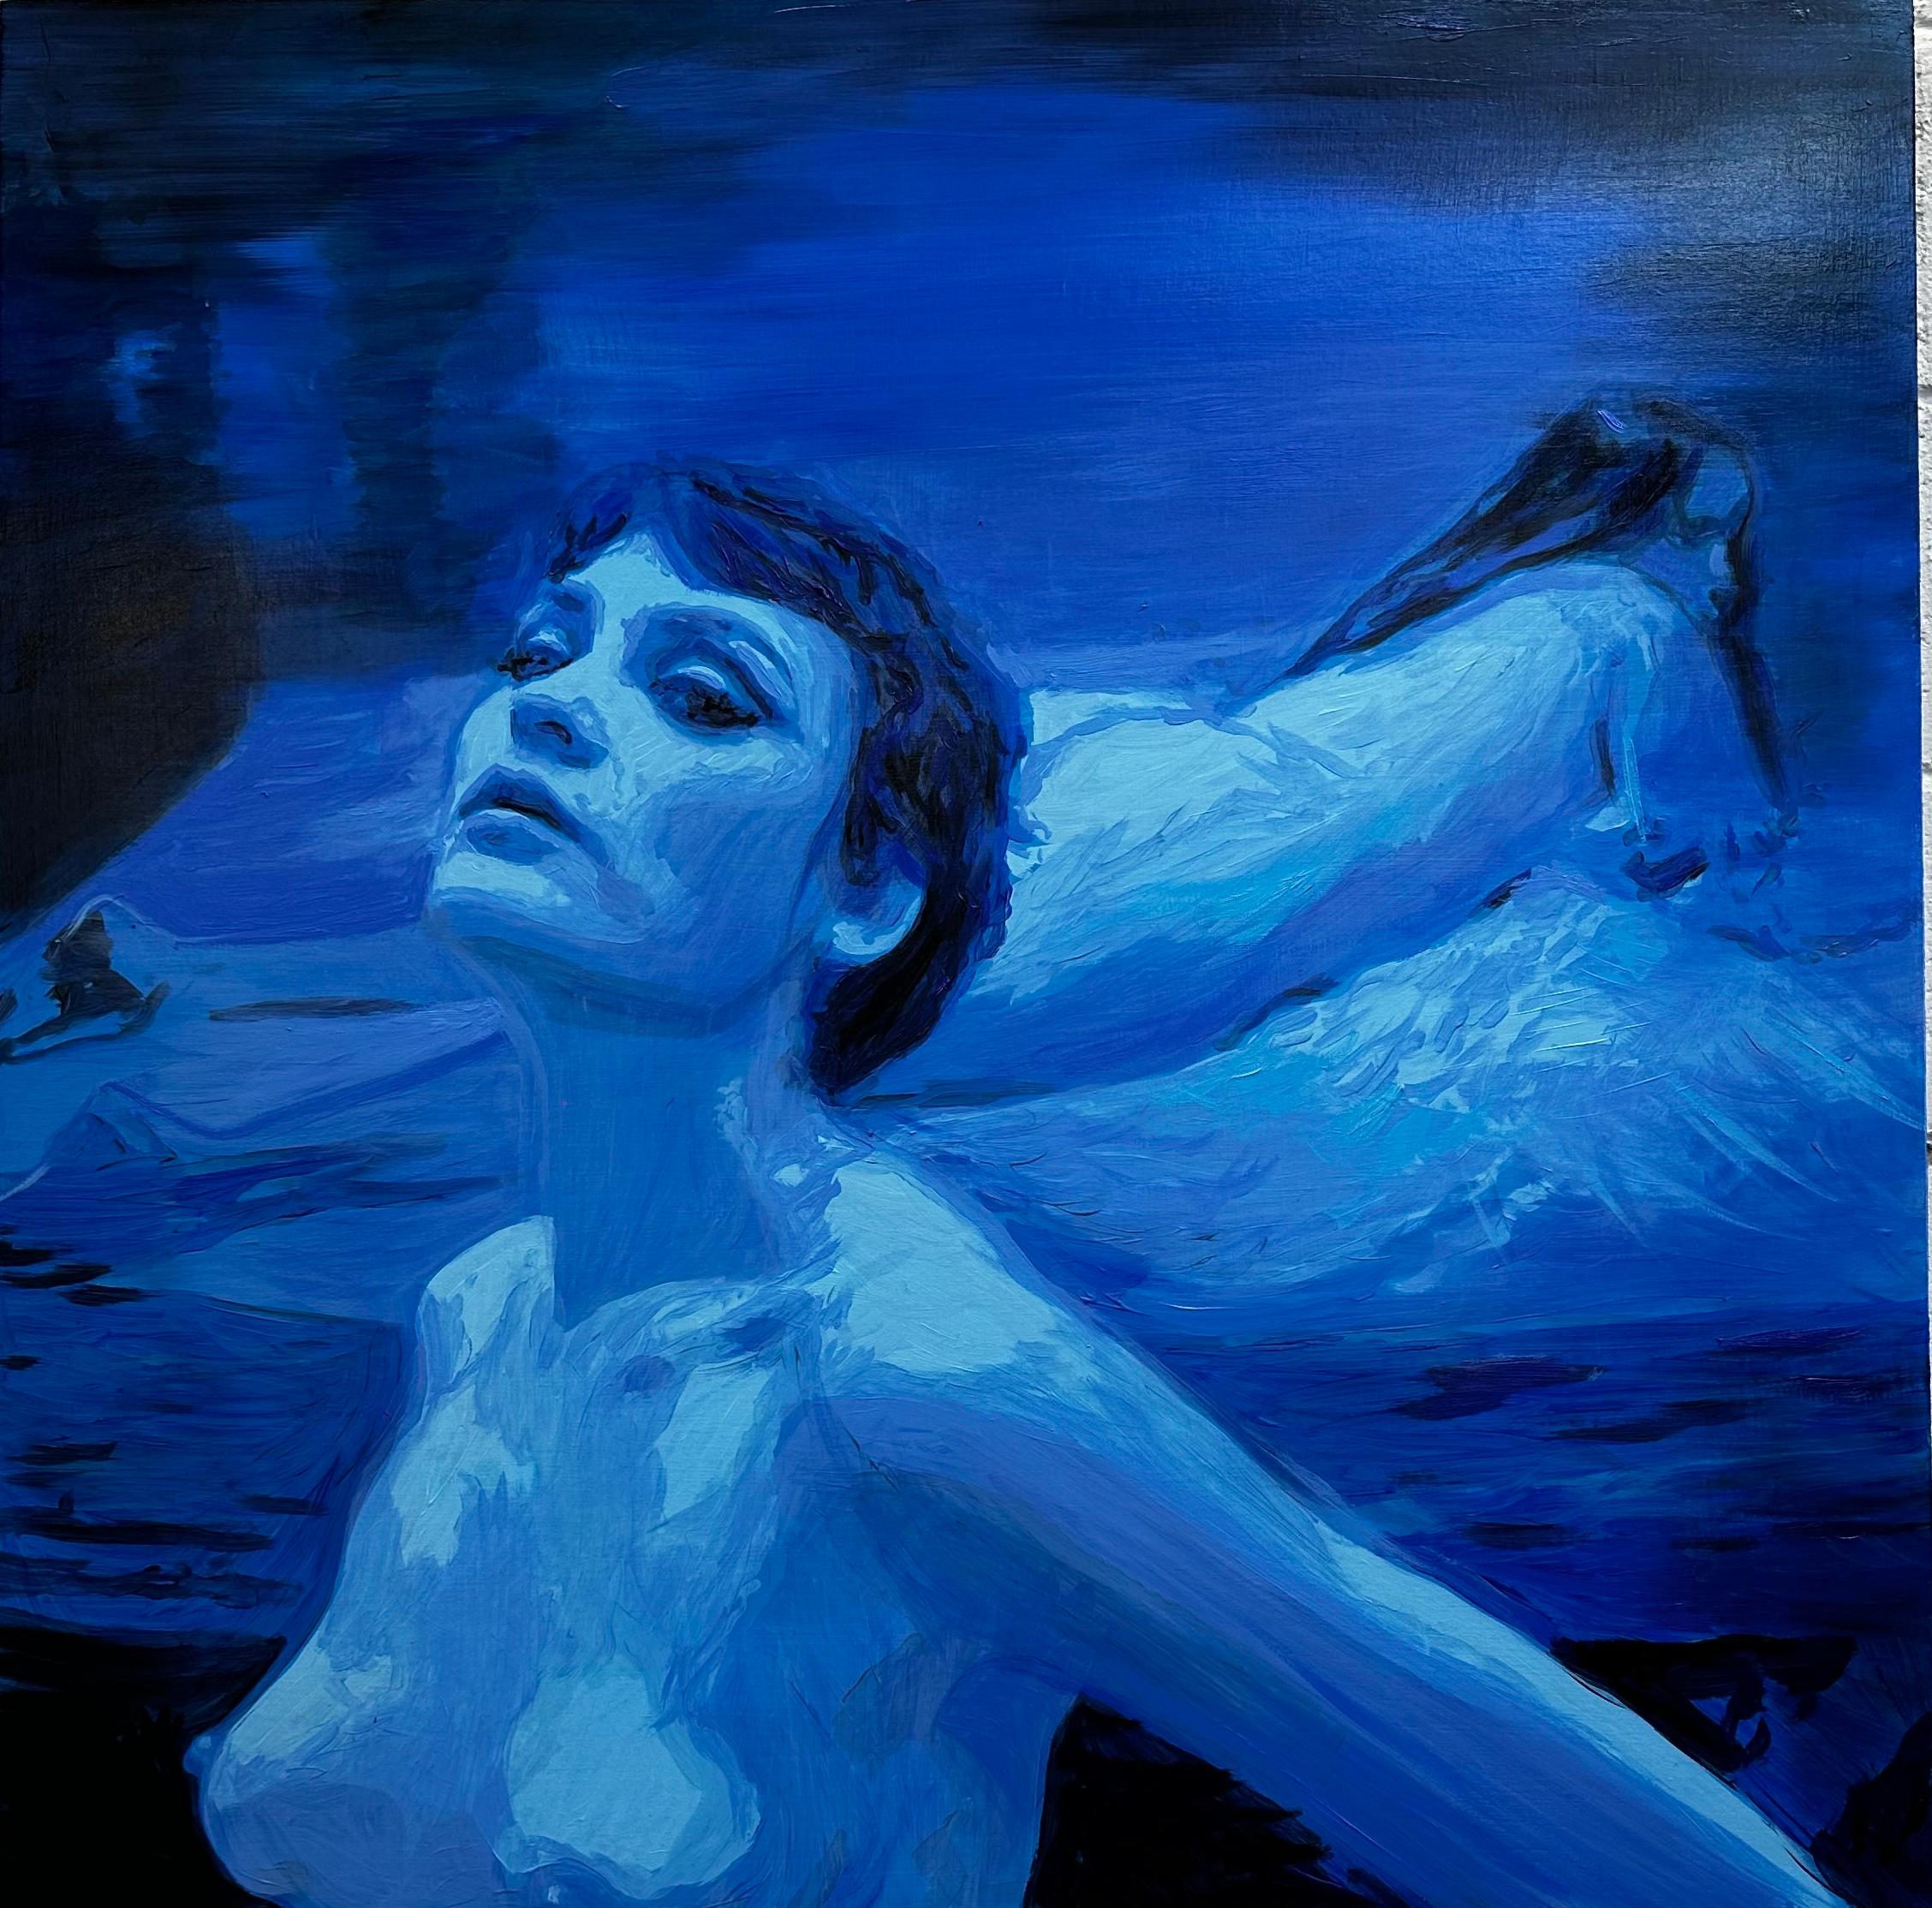 Nicolás Guzmán Portrait Painting - Untitled - Woman, nude portrait, figurative oil painting, blue & black